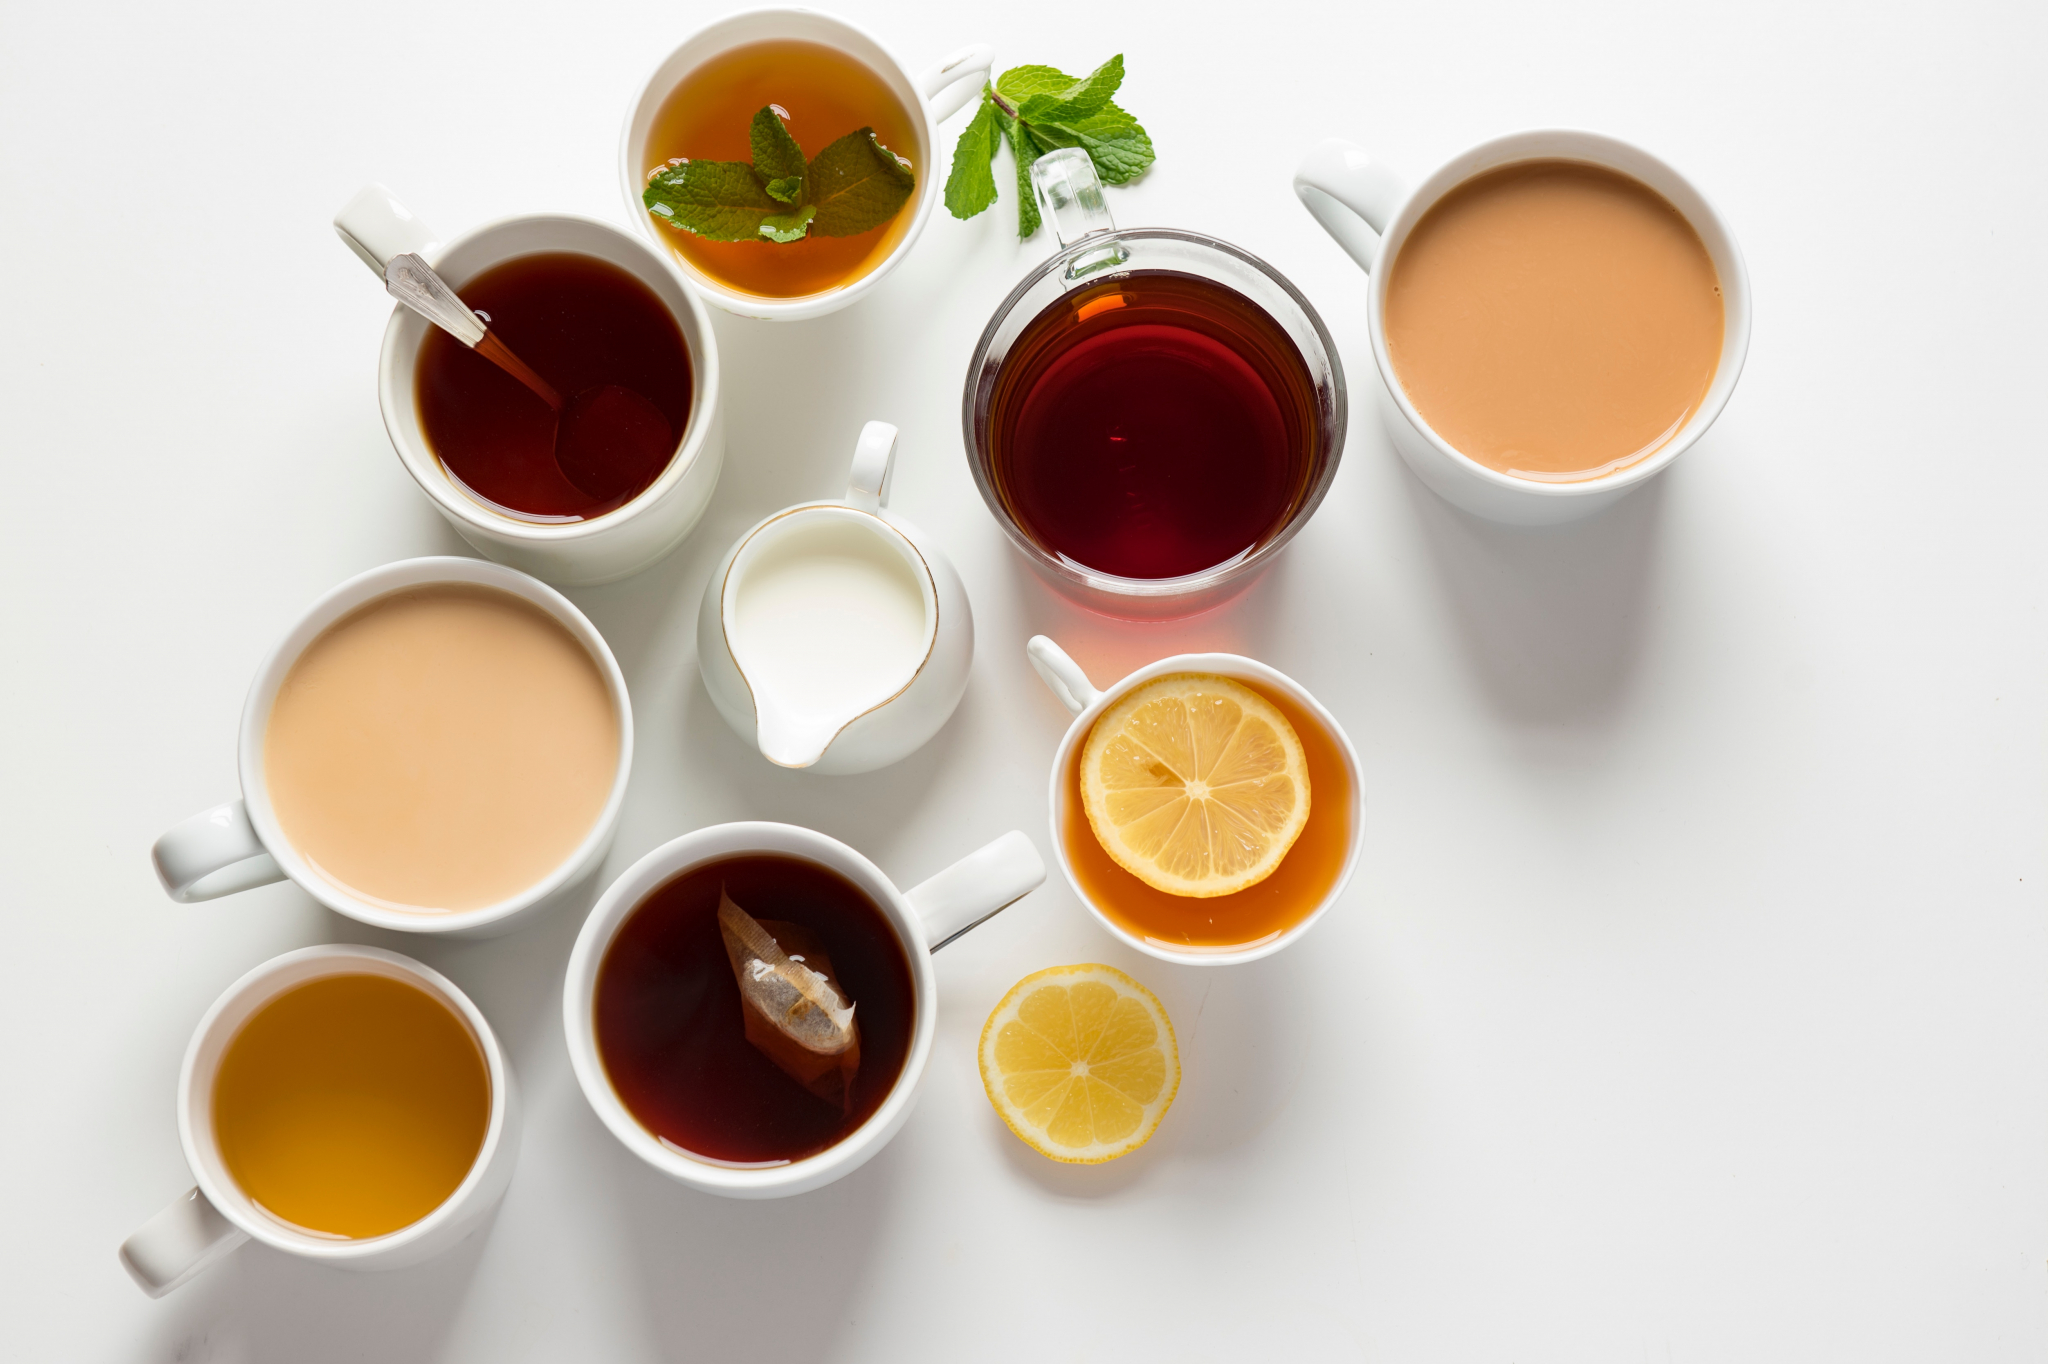 В Росконтроле назвали марки самого безопасного для здоровья чая